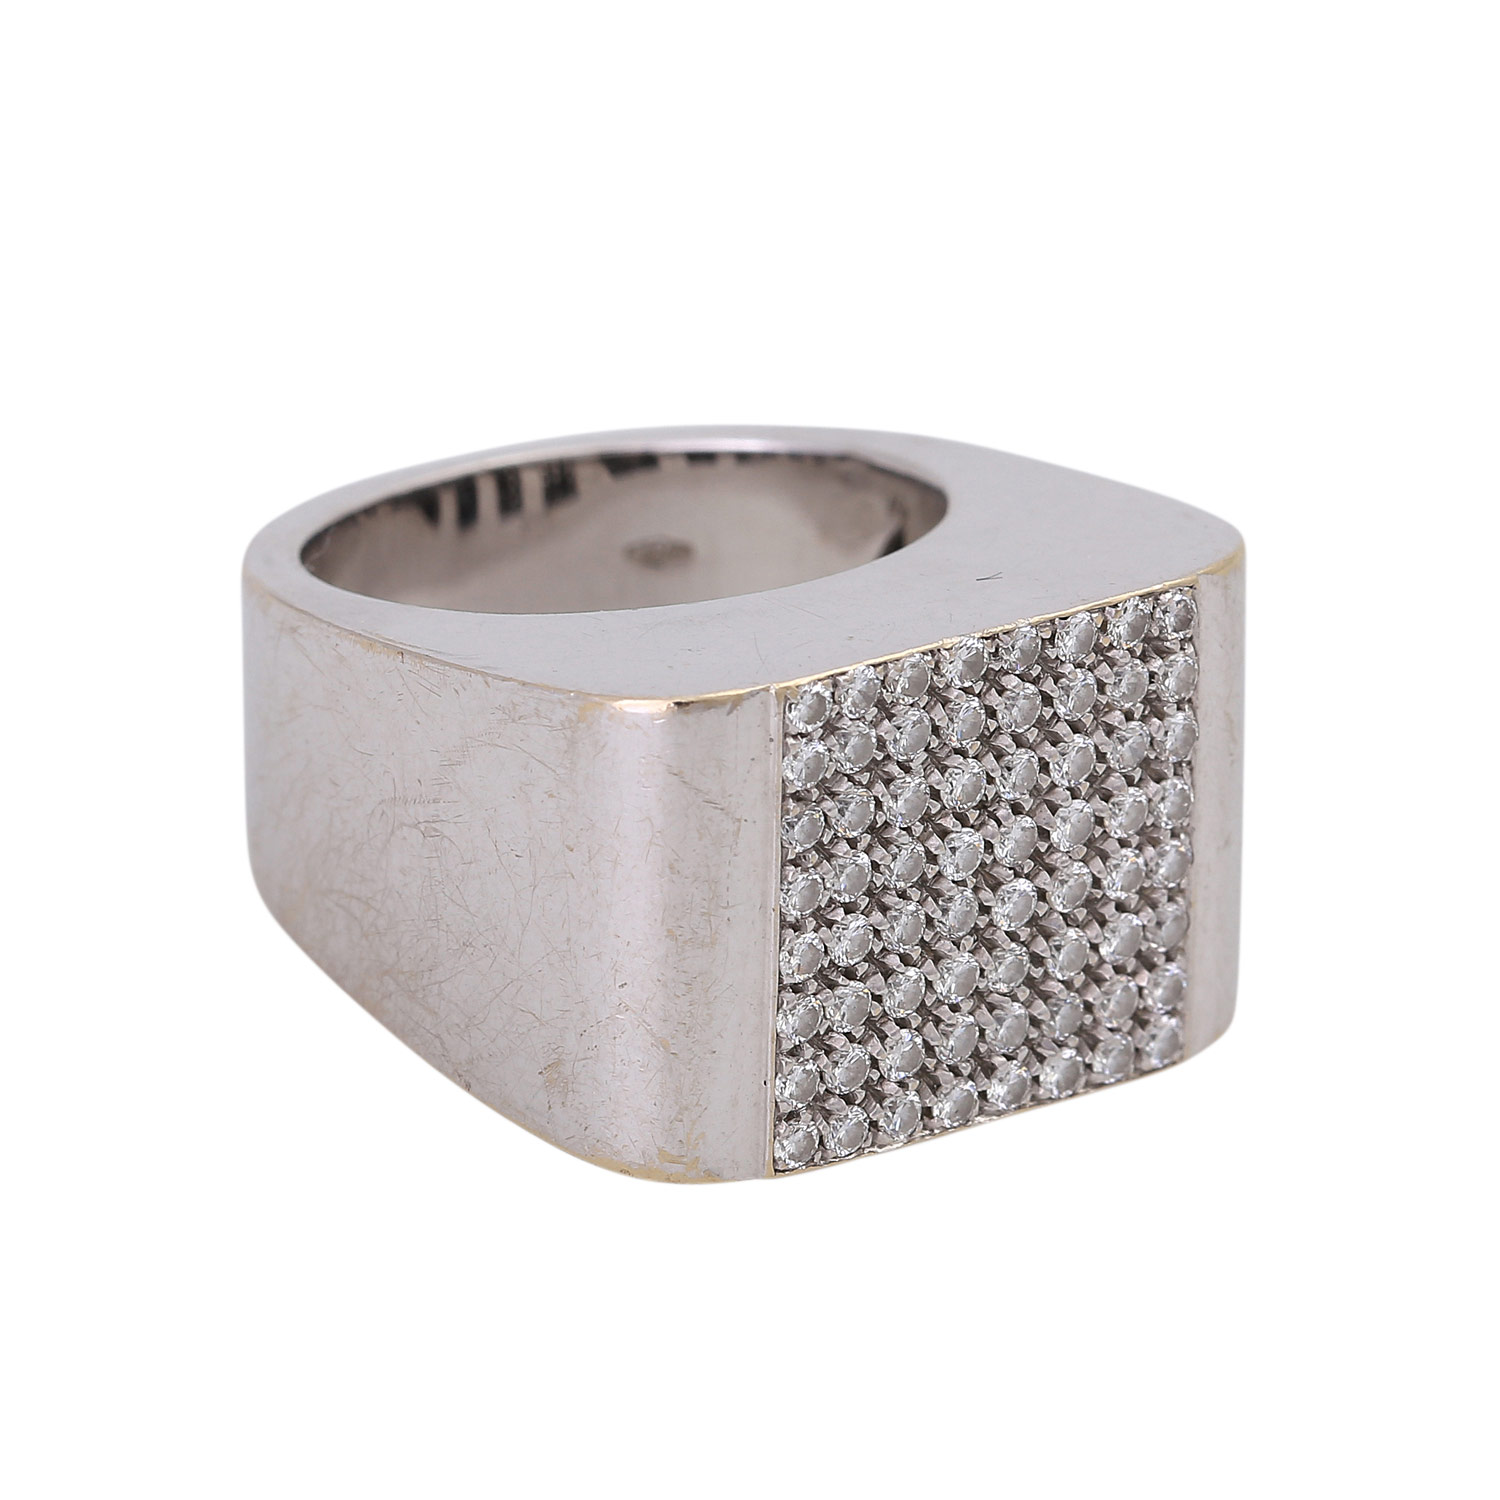 WEMPE Ring mit zahlreichen Brillanten ca. 0,64 ctvon guter Farbe und Reinheit, WG 18K, - Image 2 of 4